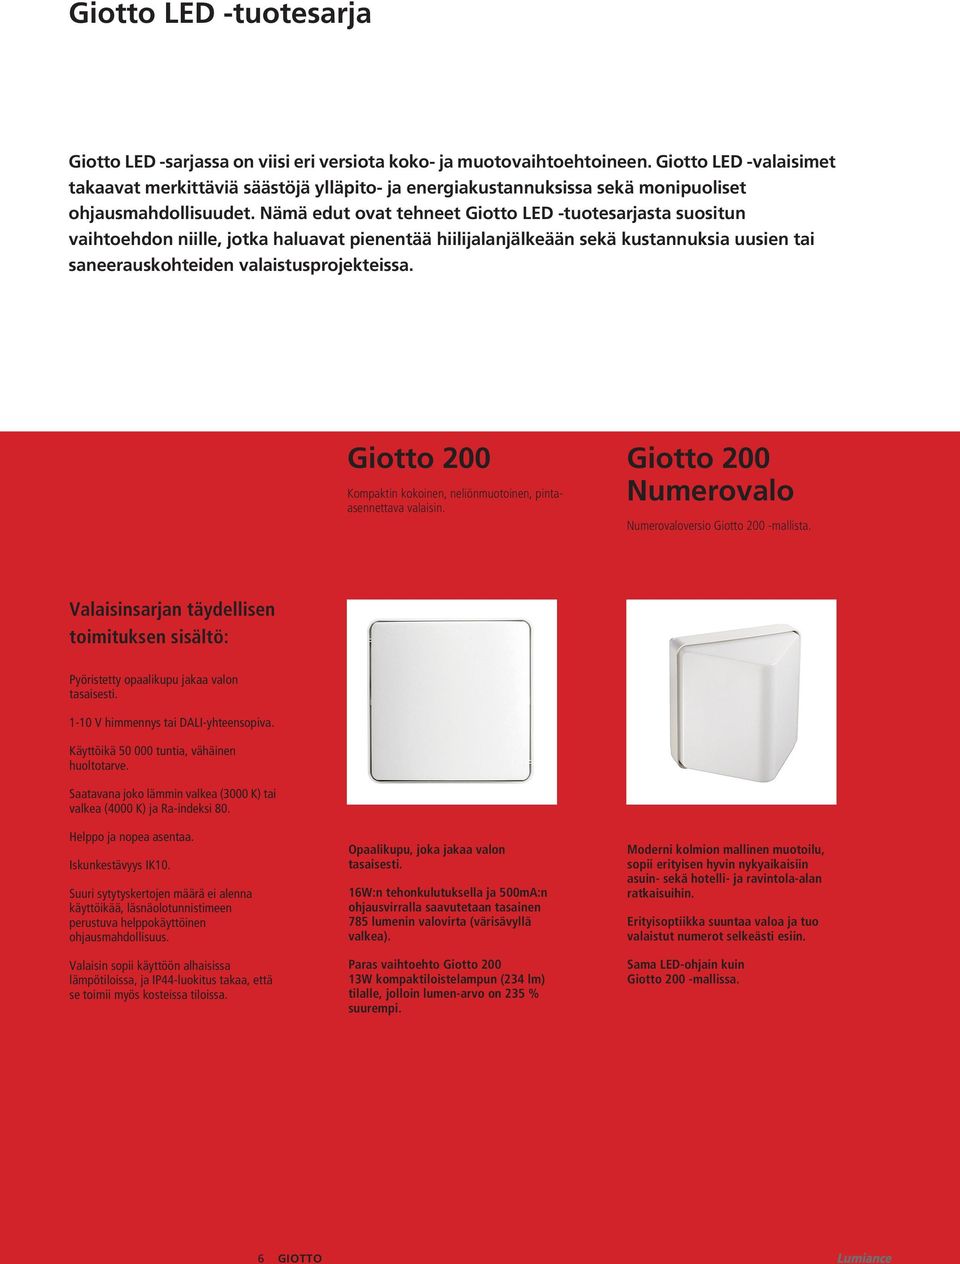 Nämä edut ovat tehneet Giotto LED -tuotesarjasta suositun vaihtoehdon niille, jotka haluavat pienentää hiilijalanjälkeään sekä kustannuksia uusien tai saneerauskohteiden valaistusprojekteissa.